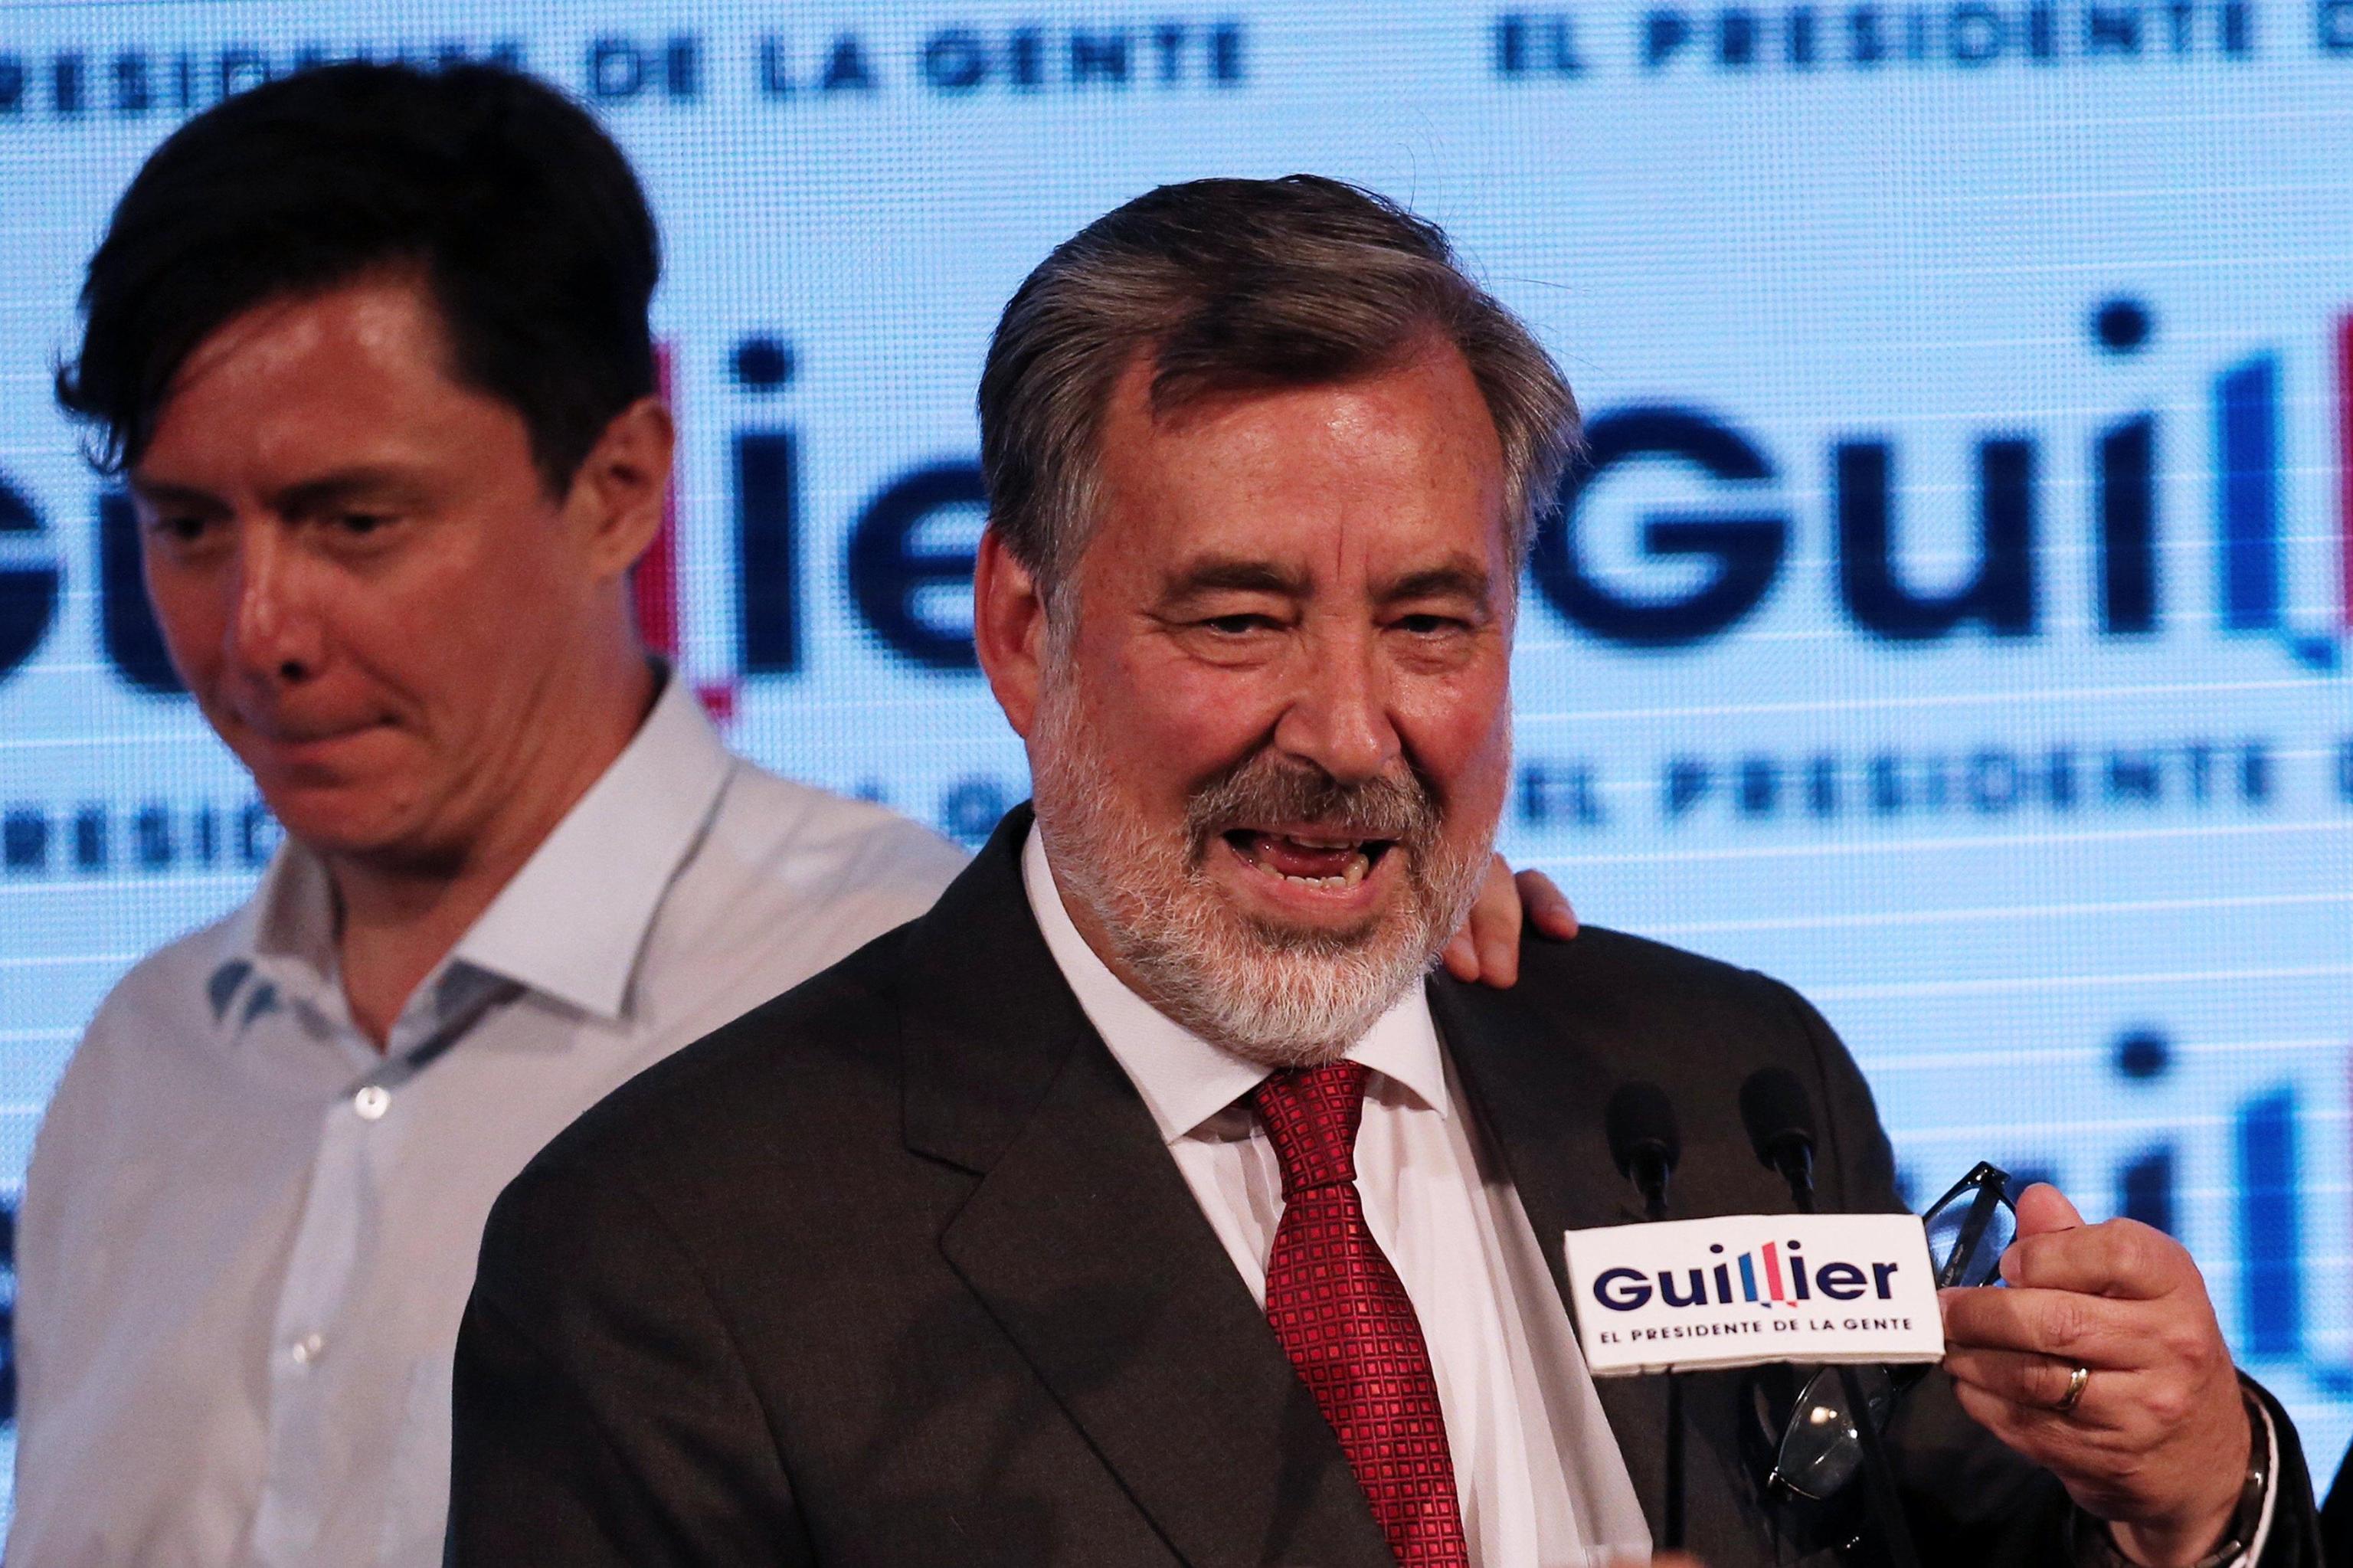 Il senatore progressista e candidato alla presidenza Alejandro Guillier parla ai suoi sostenitori dopo la sconfitta